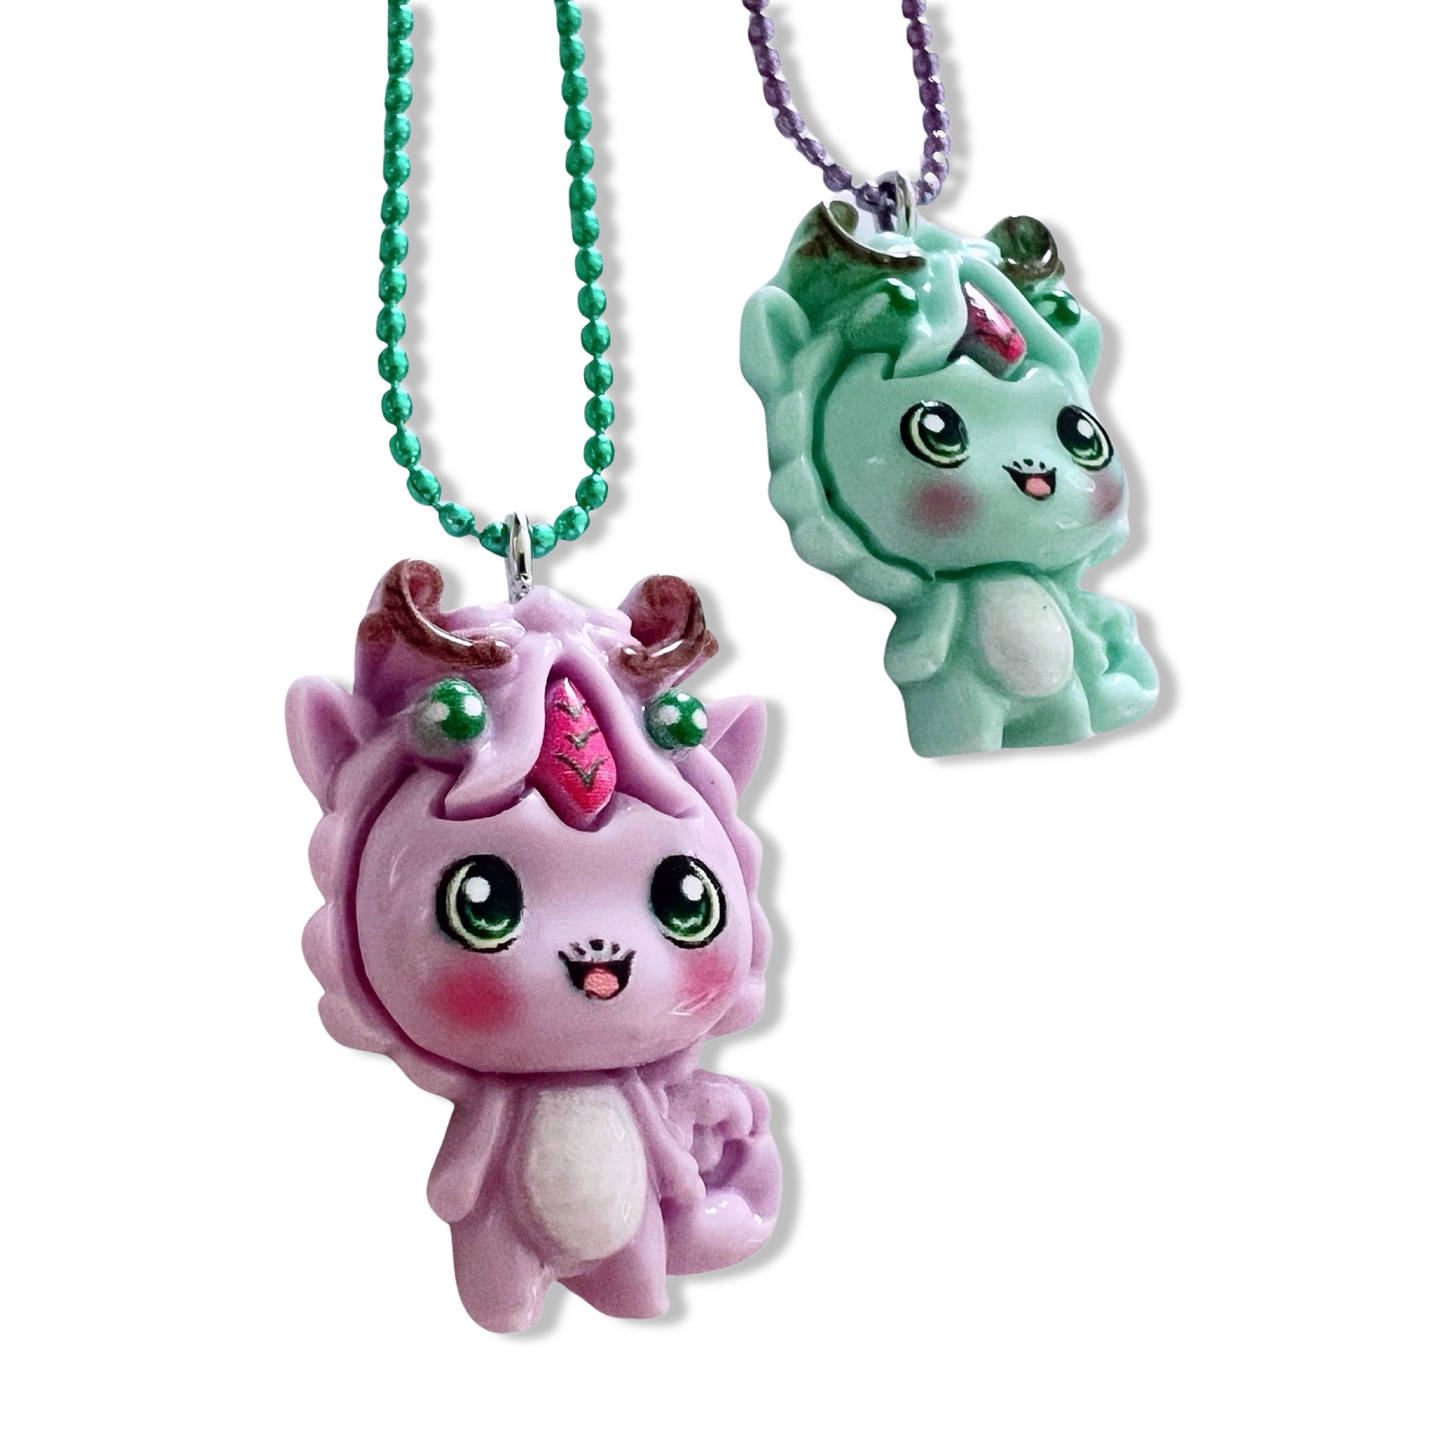 Pop Cutie Dragon Necklace - Handmade